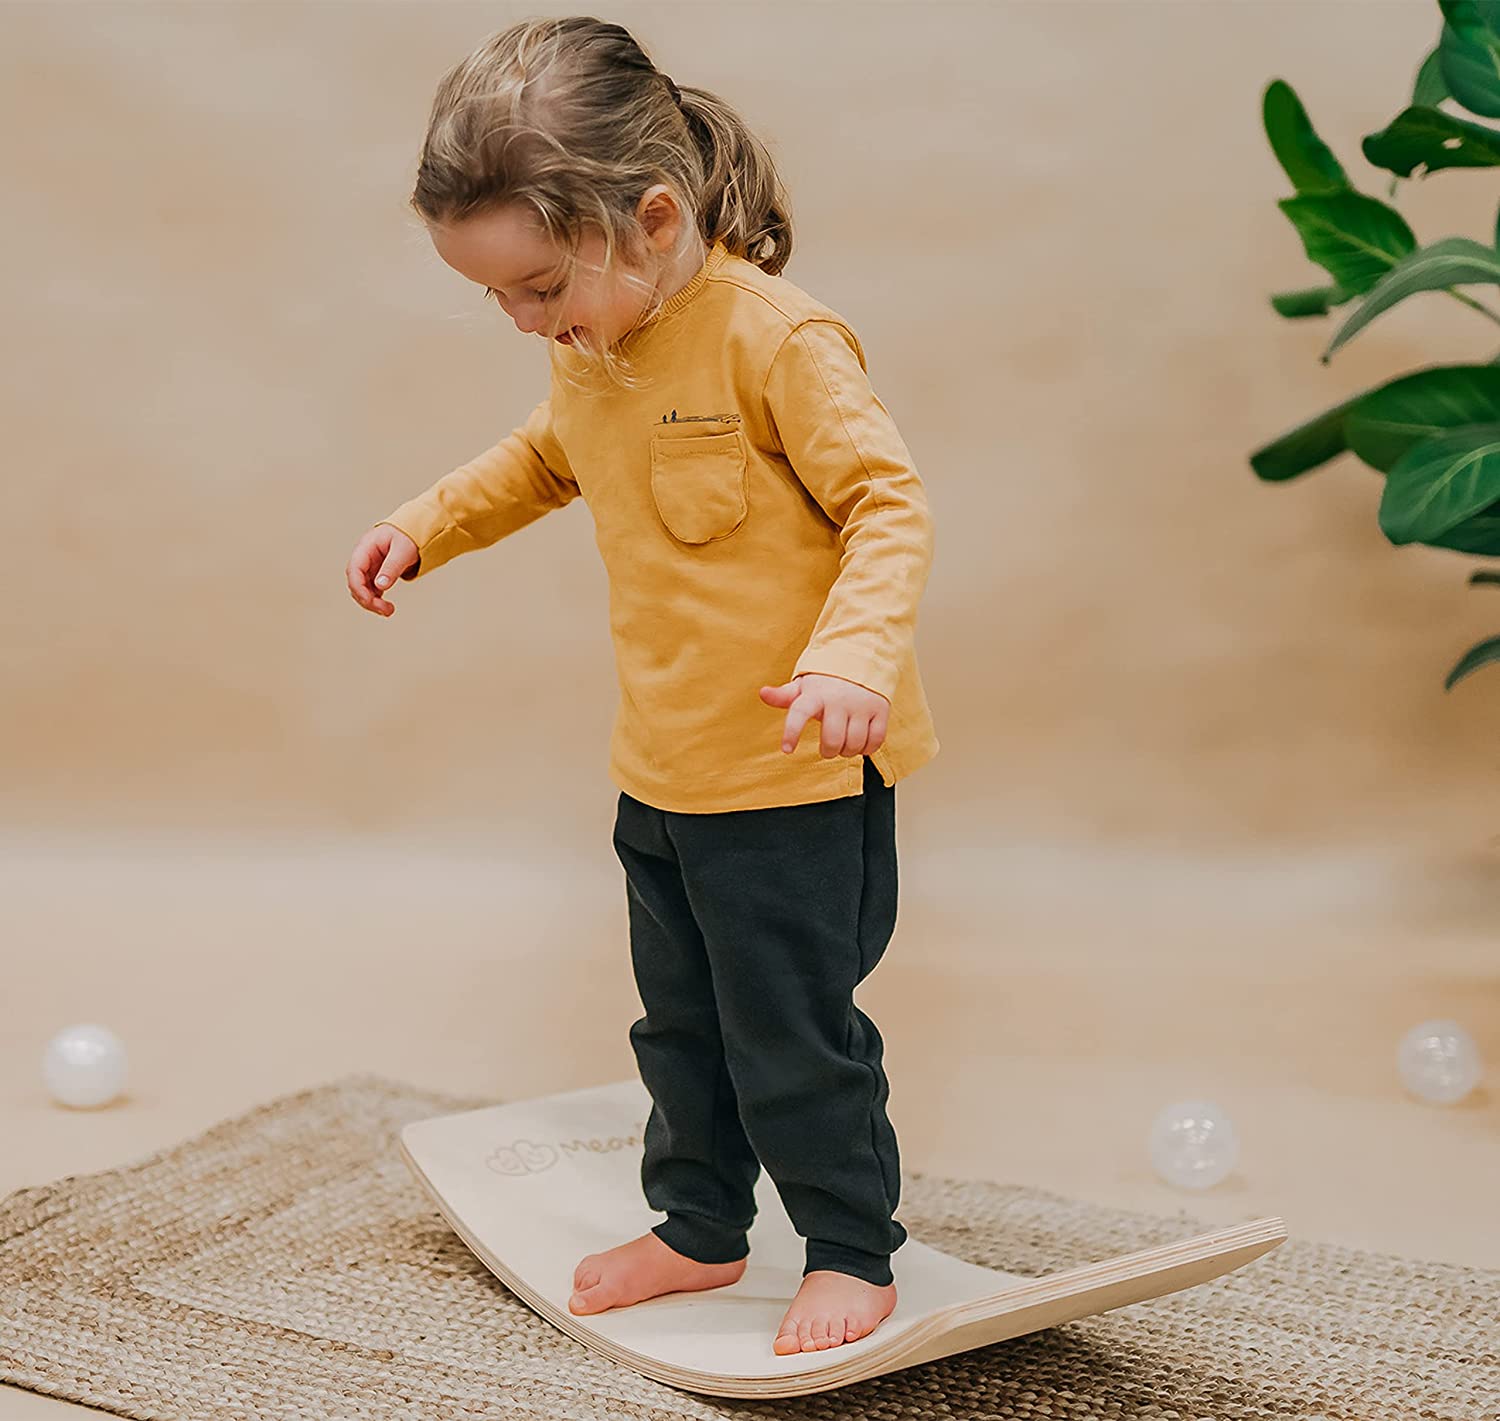 Le balance board Meowbaby est un jeu d'équilibre Montessori pour enfant ludique.